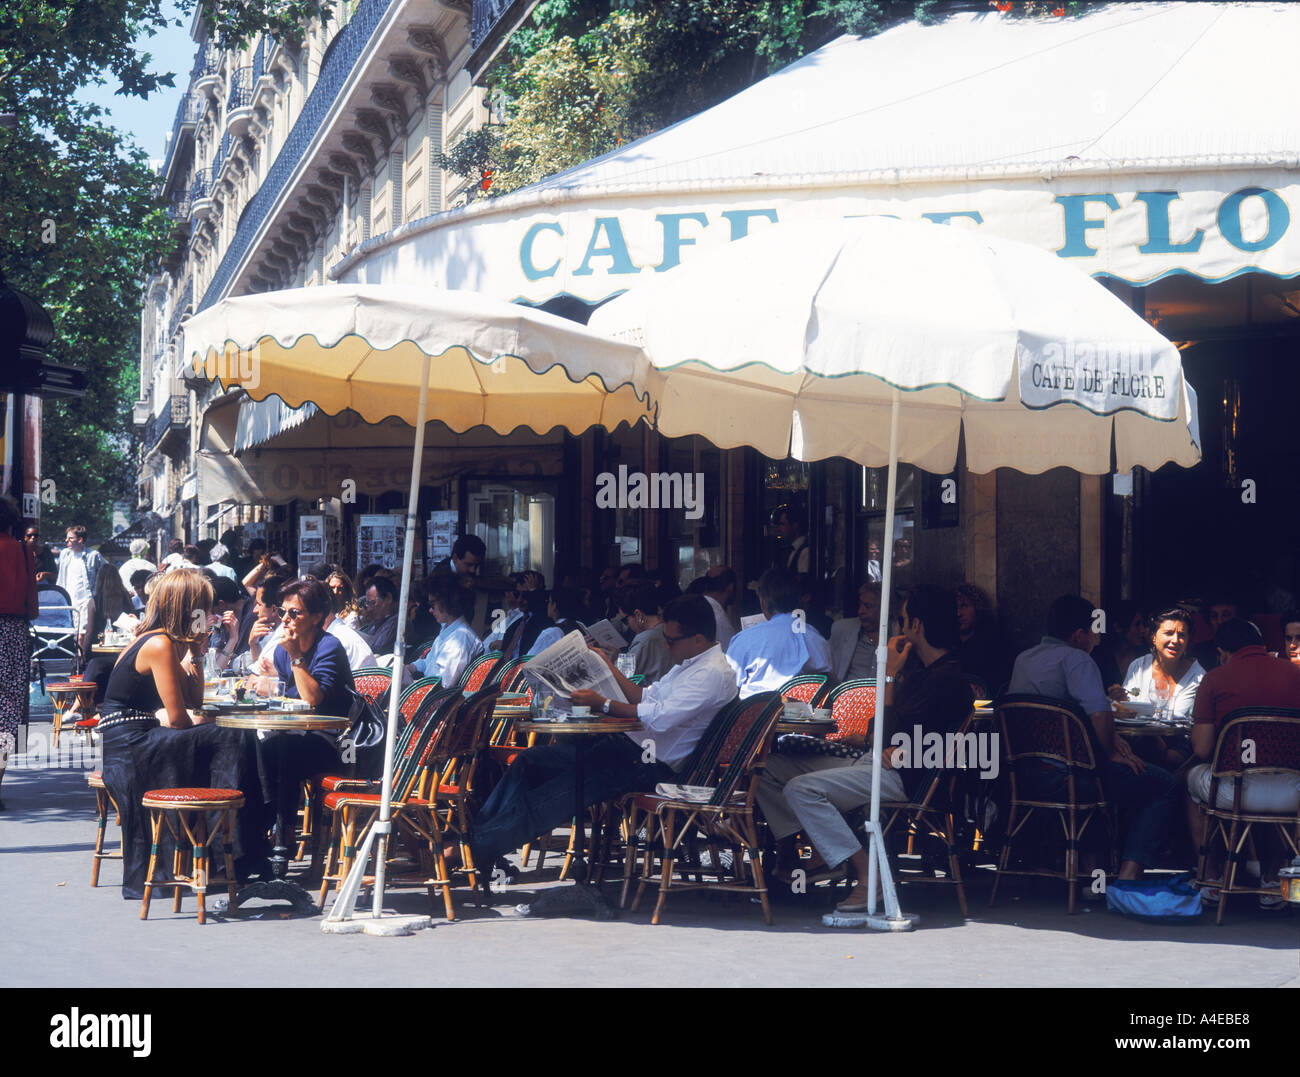 FRANCE PARIS CAFE DE FLORE SAINT GERMAIN Stock Photo